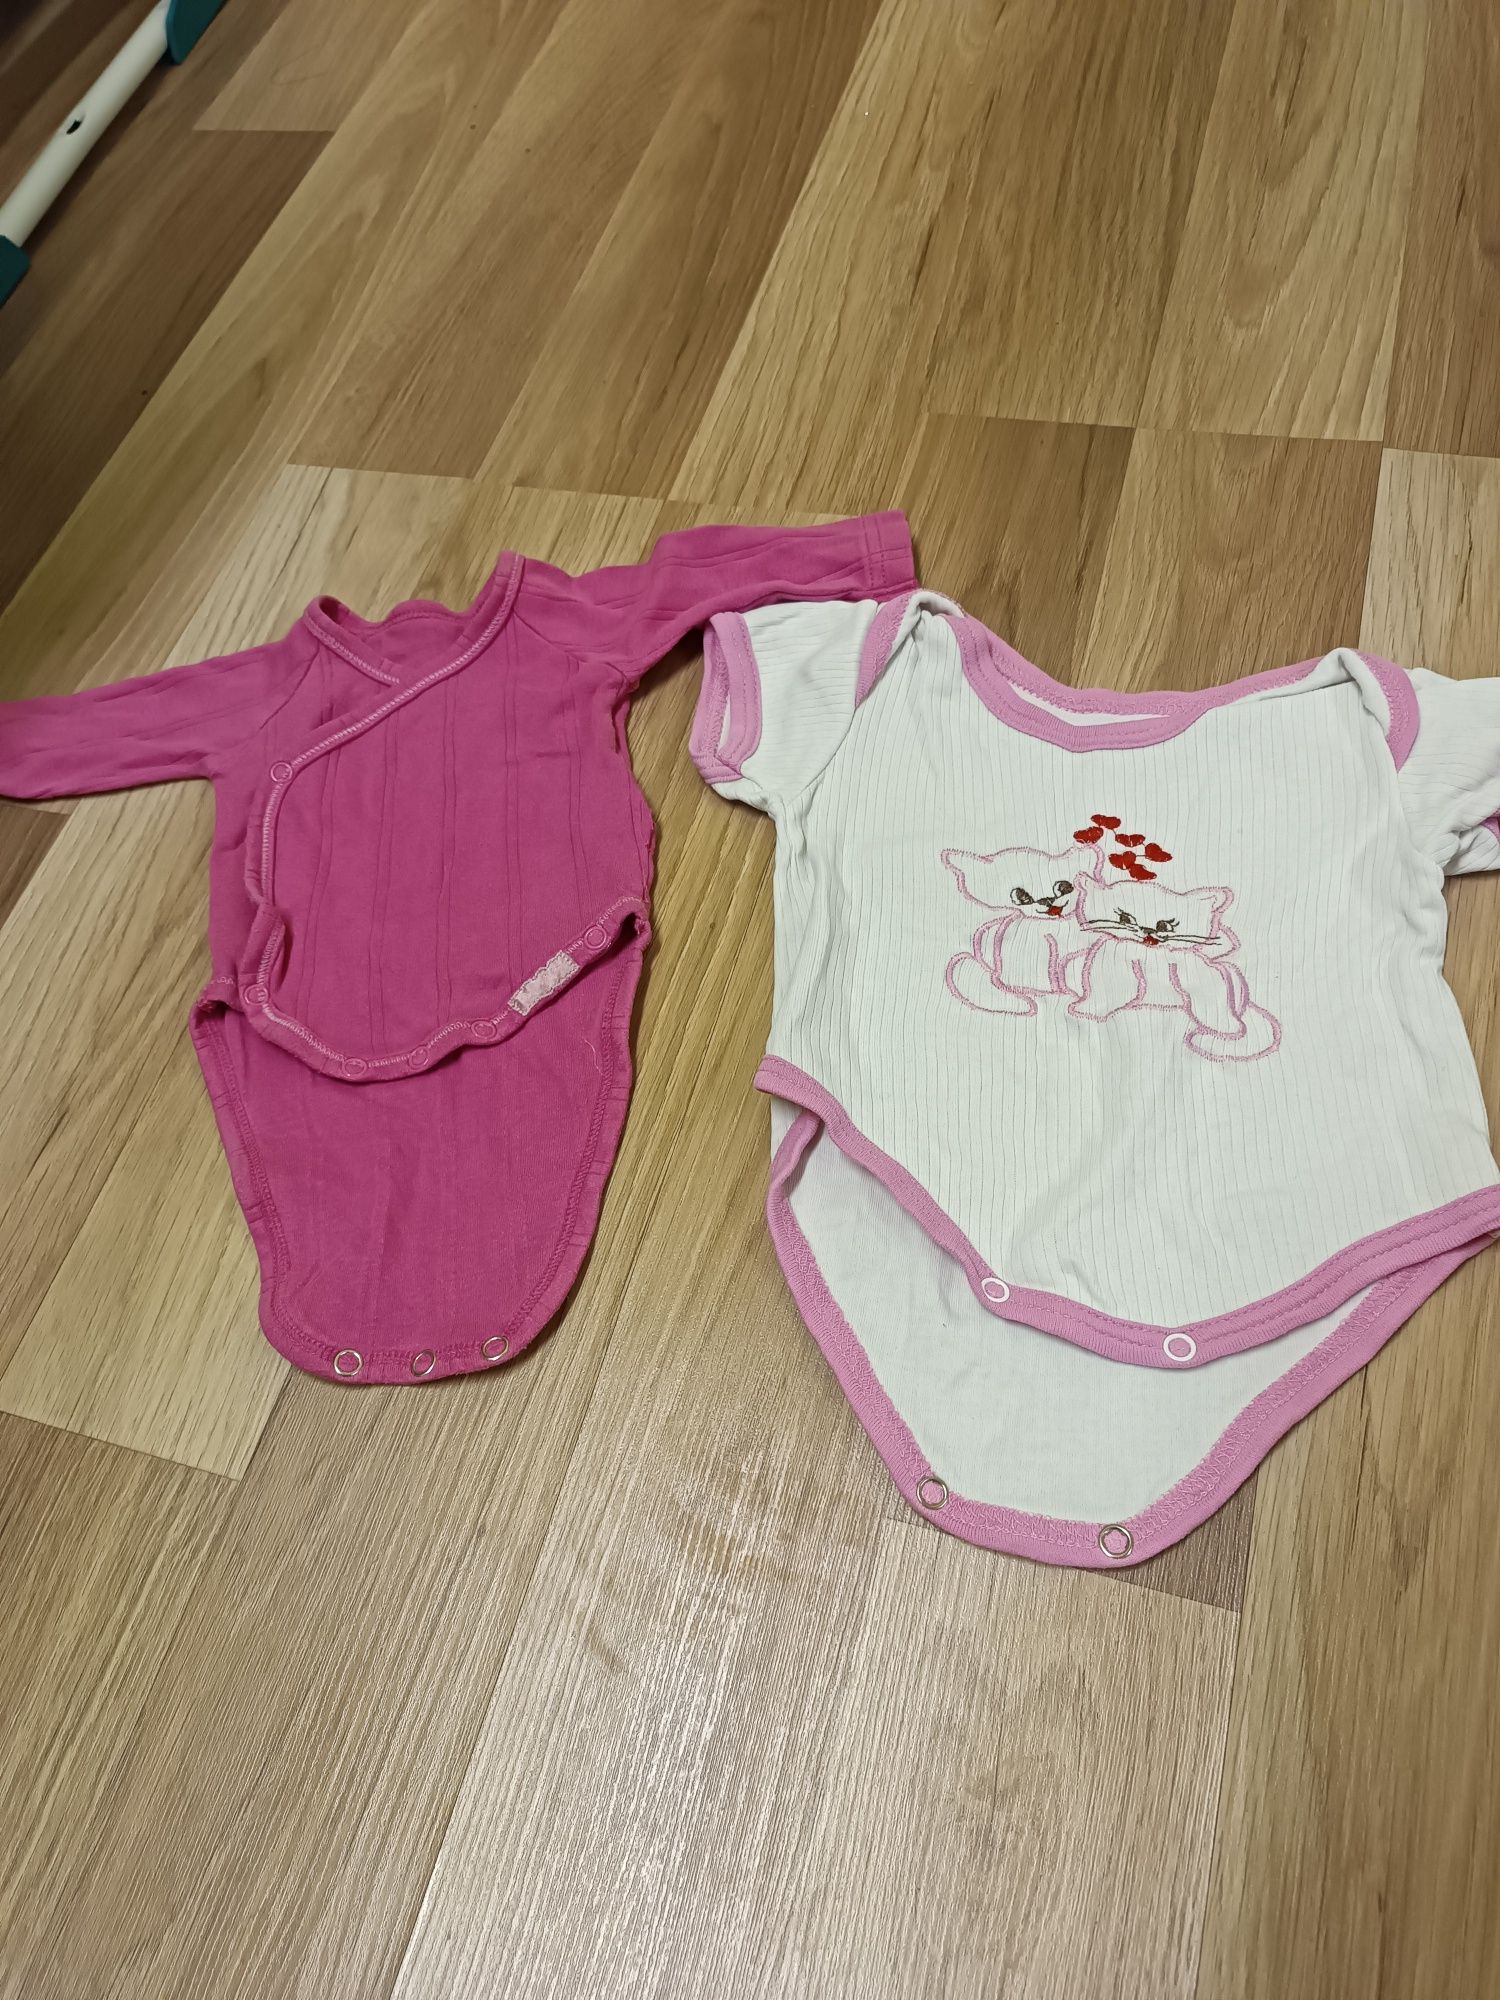 Дитячий одяг для новонароджених дітей